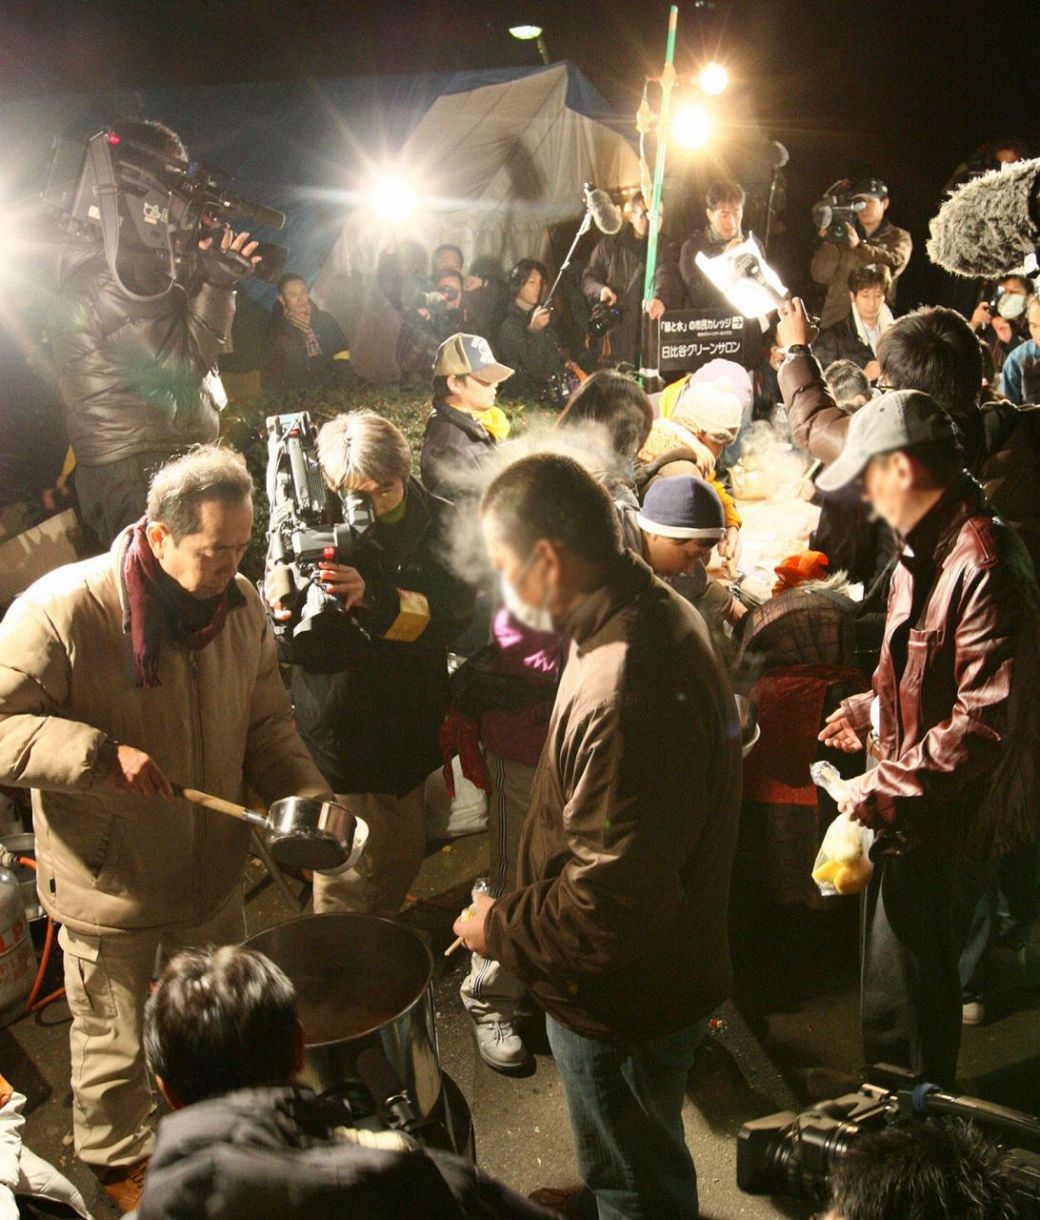 ２００８年１２月３１日、年越し派遣村で、そばの炊き出しに列をつくる人たち＝東京都千代田区の日比谷公園で 